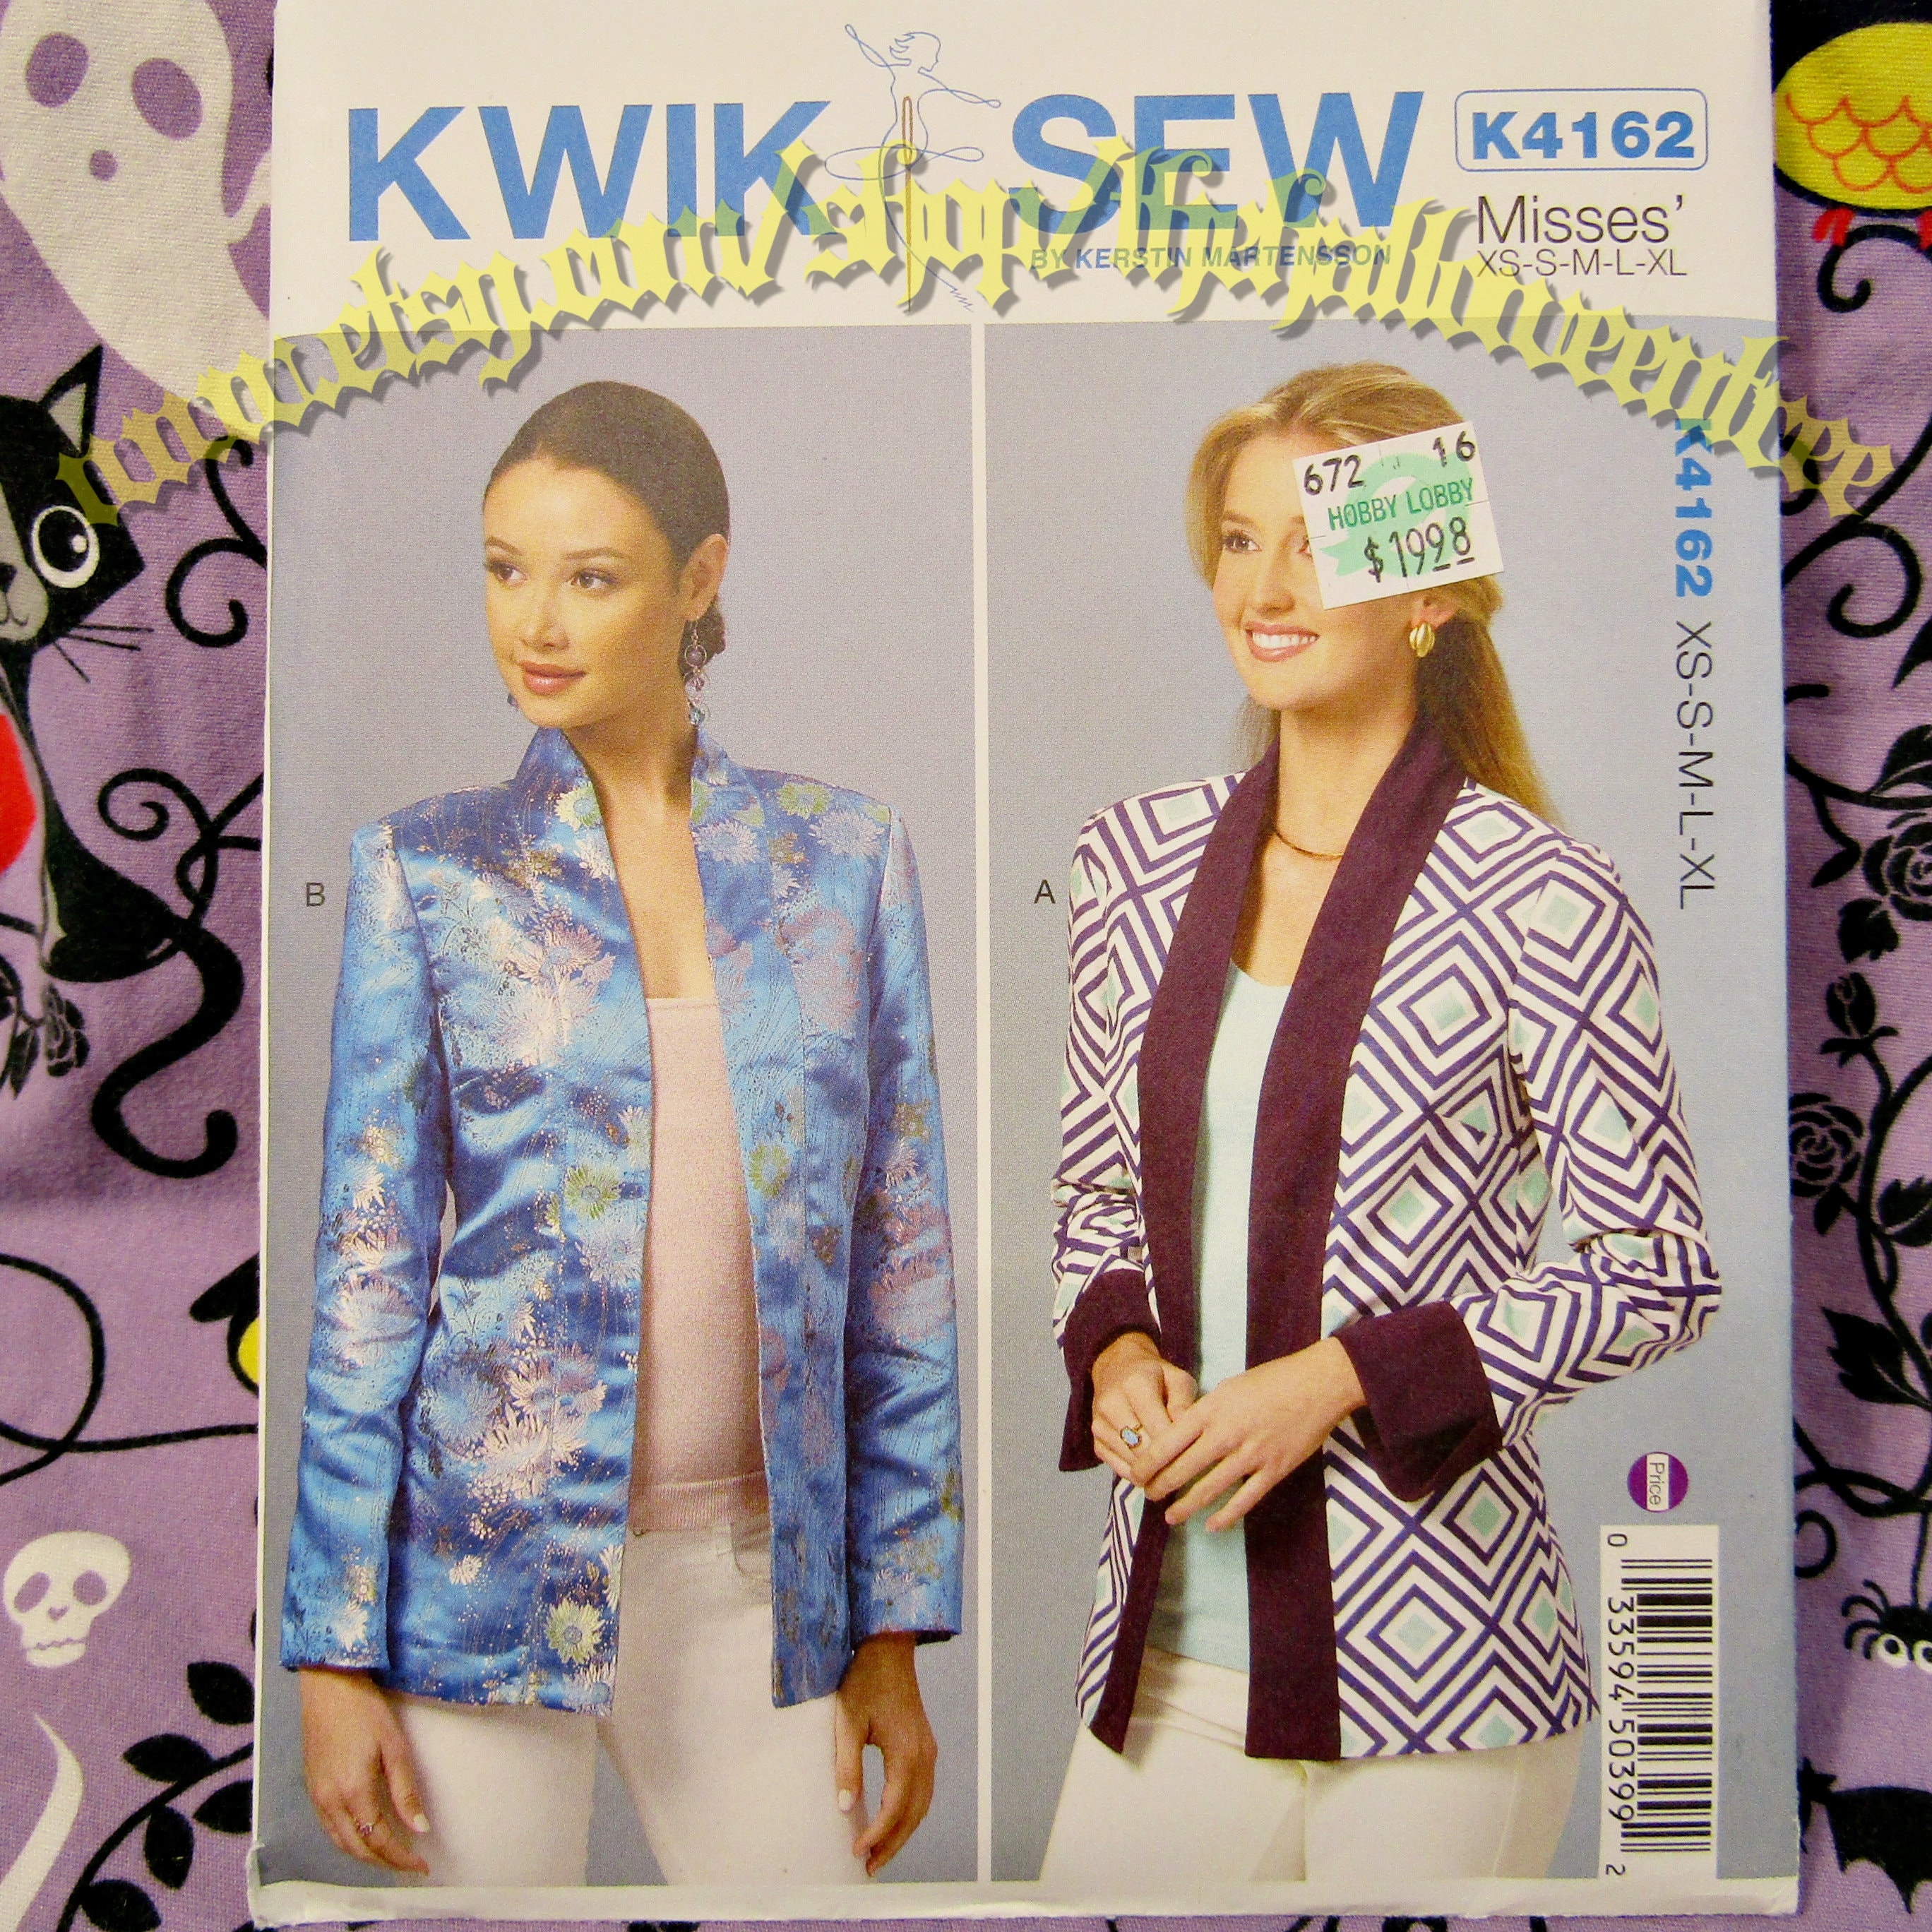 Kwiksew 4162 Kimono Style Cardigan Sewing Pattern XS-XL K4162 Kwik Sew ...